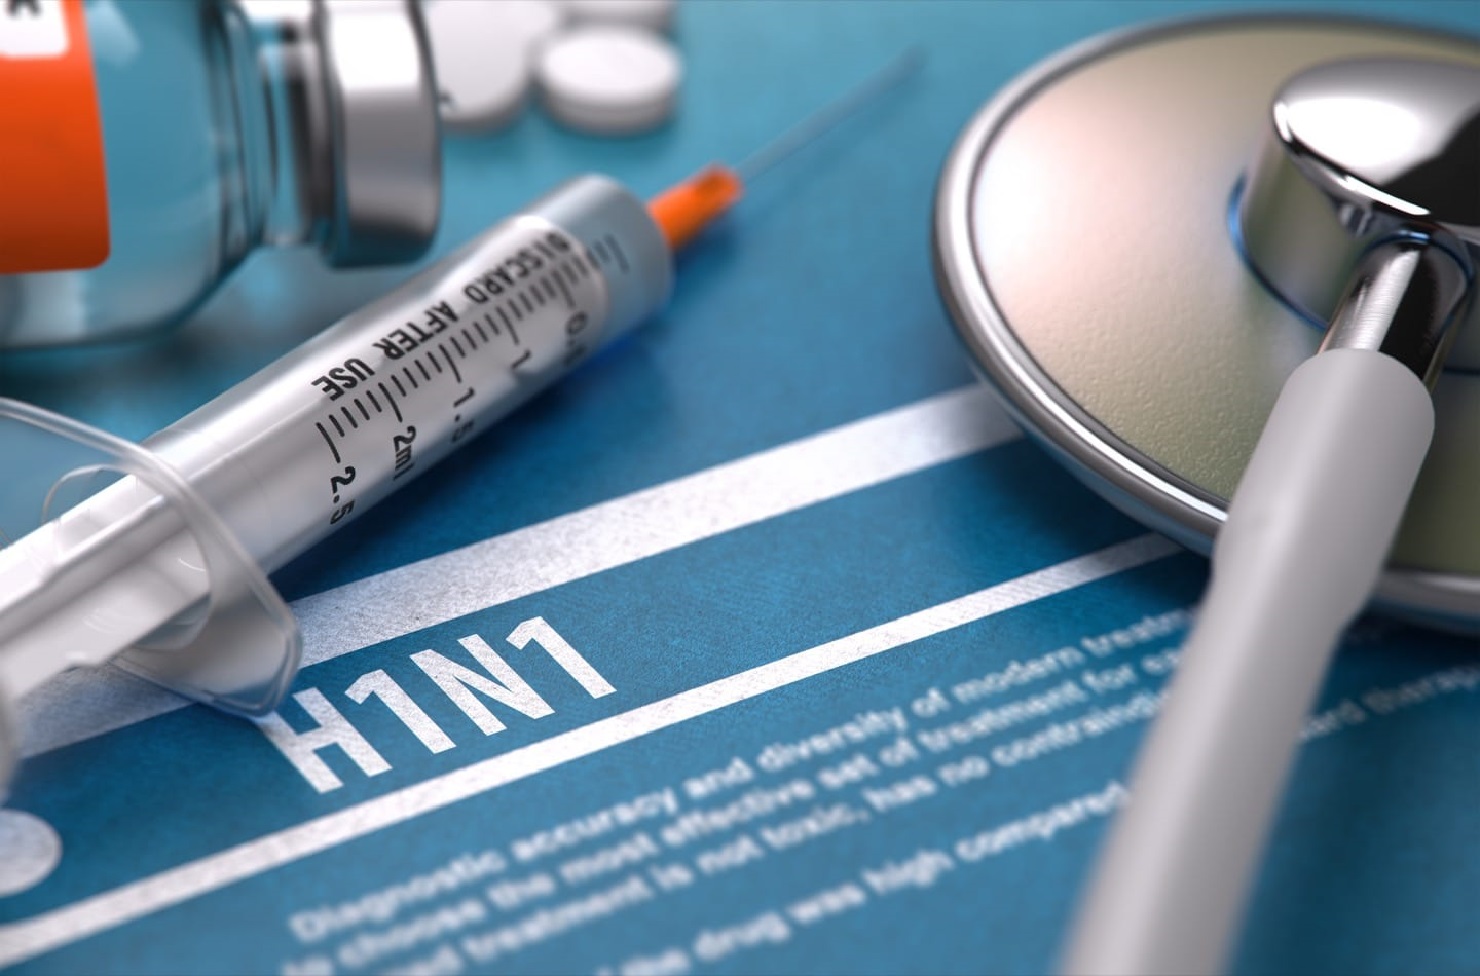 Ιταλία: Δύο νεκροί και τέσσερις σε σοβαρή κατάσταση στη Βιτσέντσα από τη γρίπη H1N1